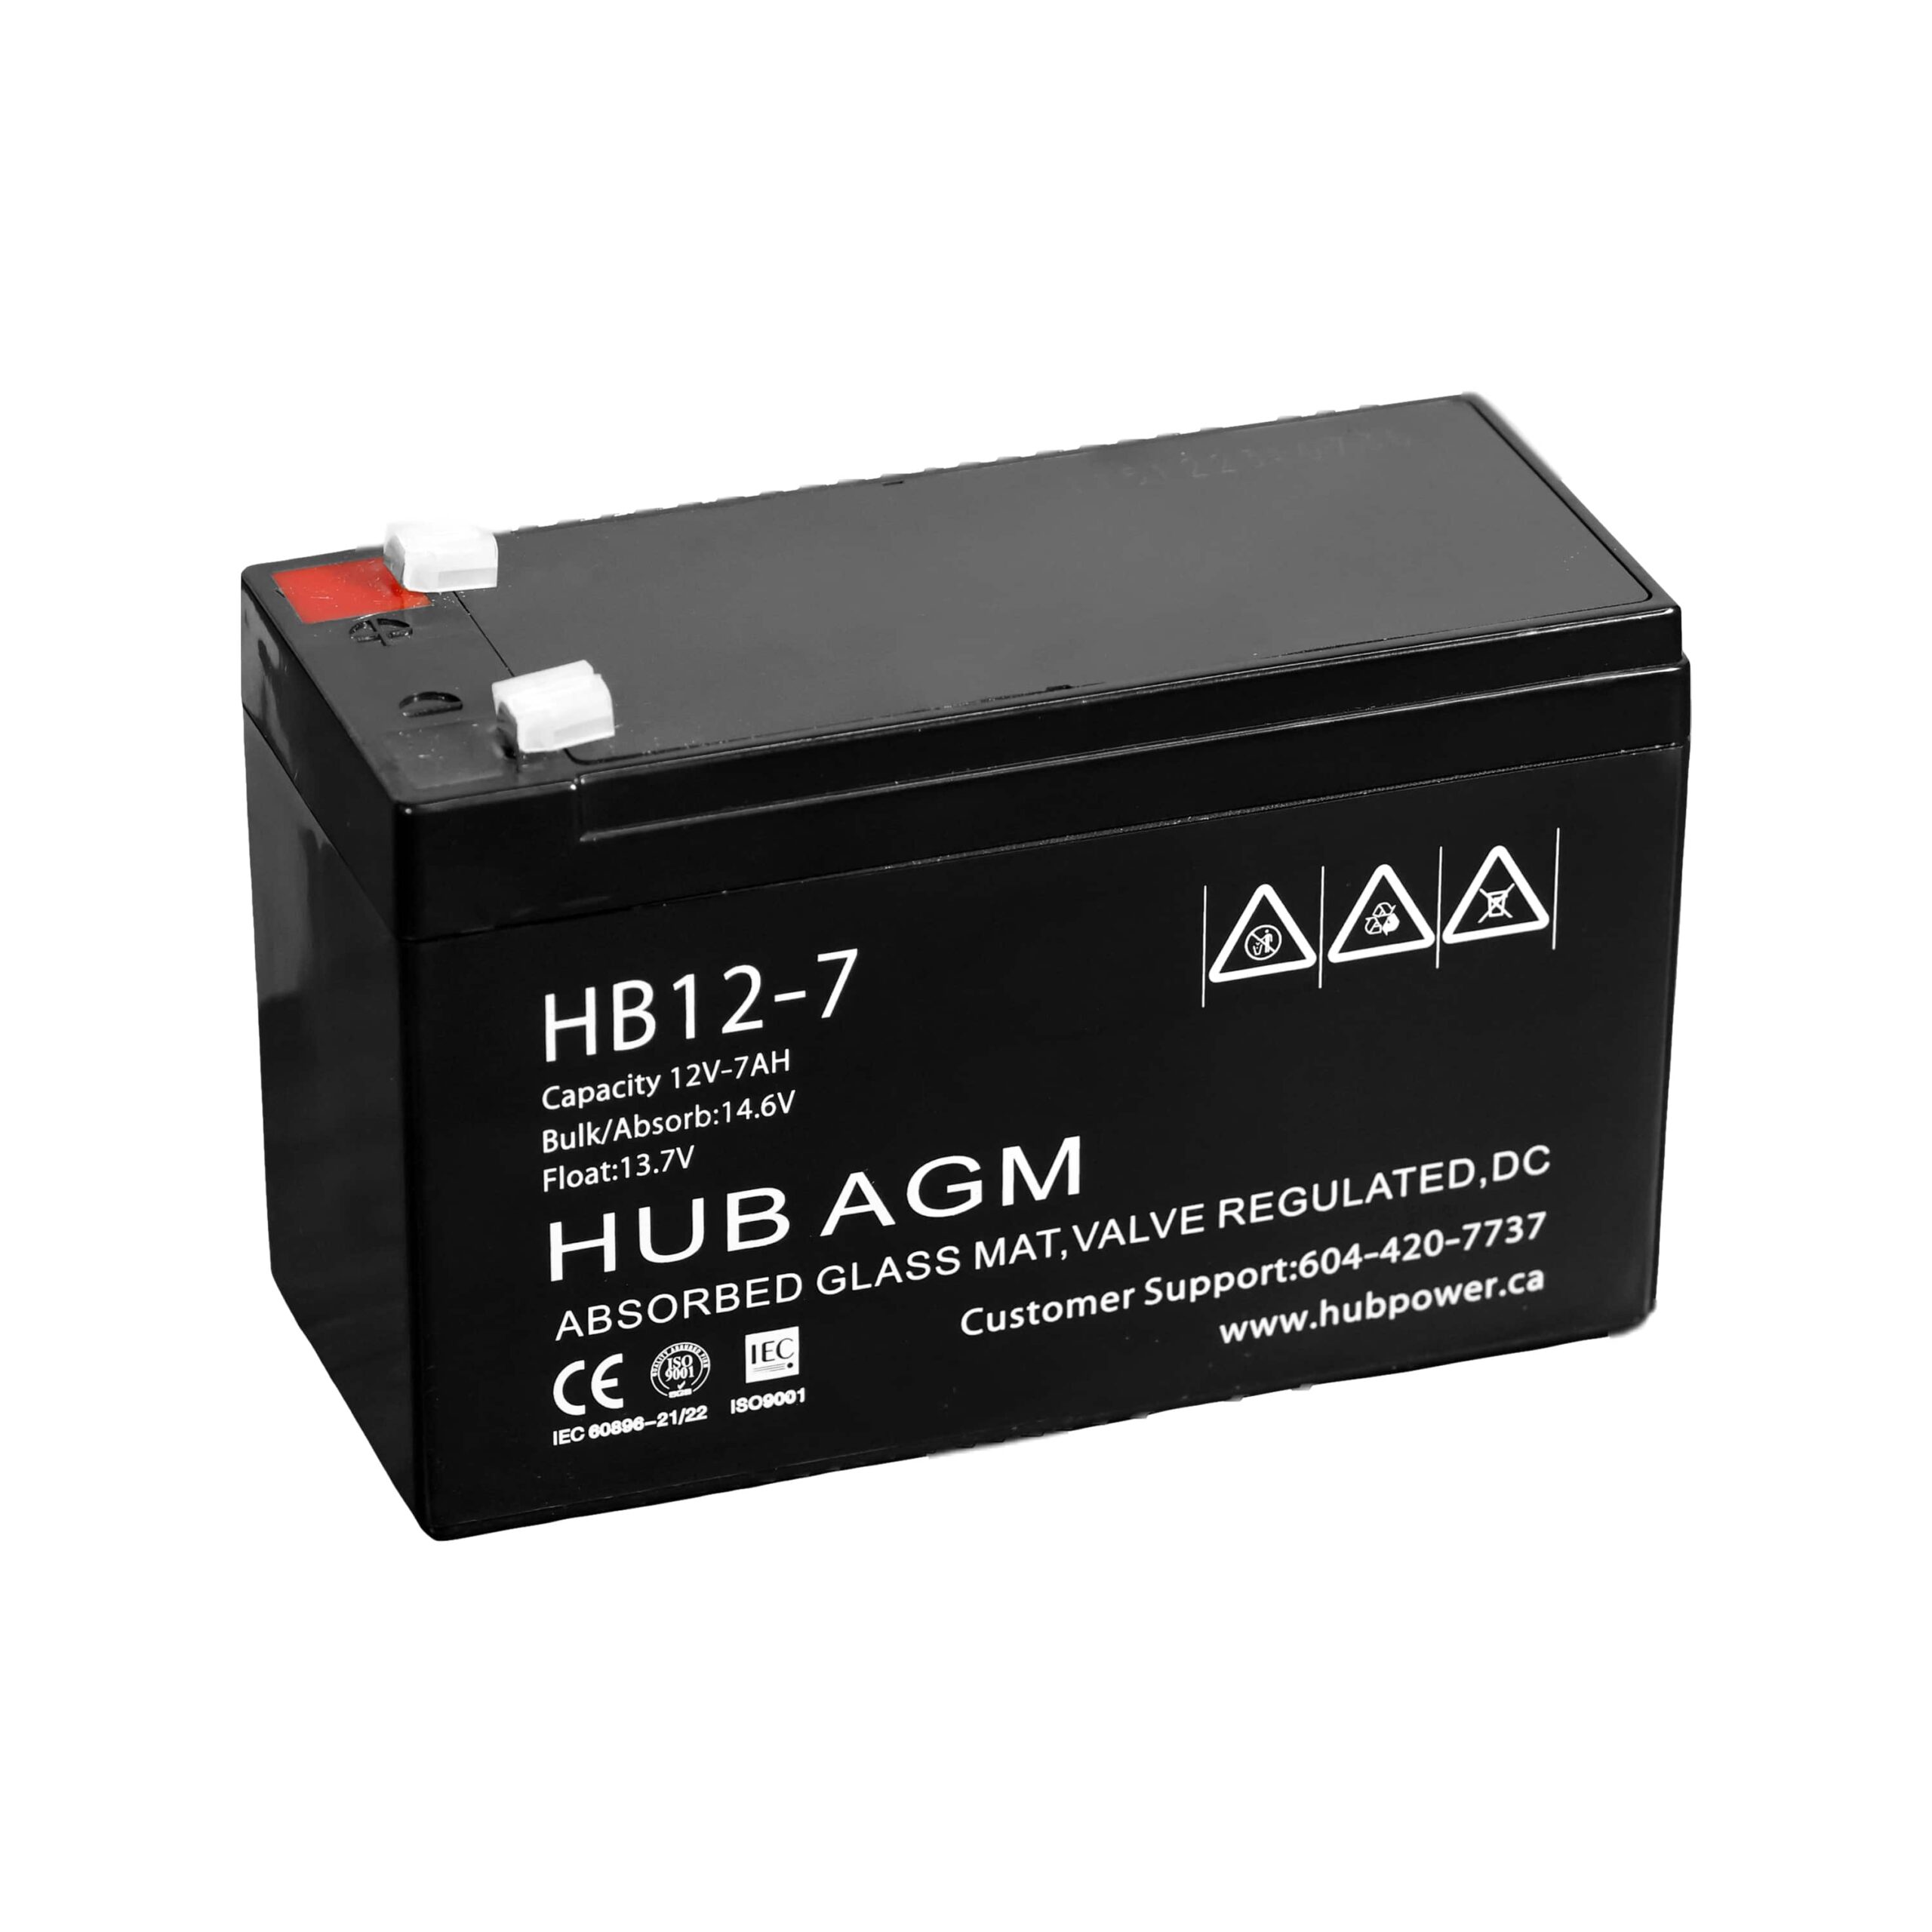 HB12-7